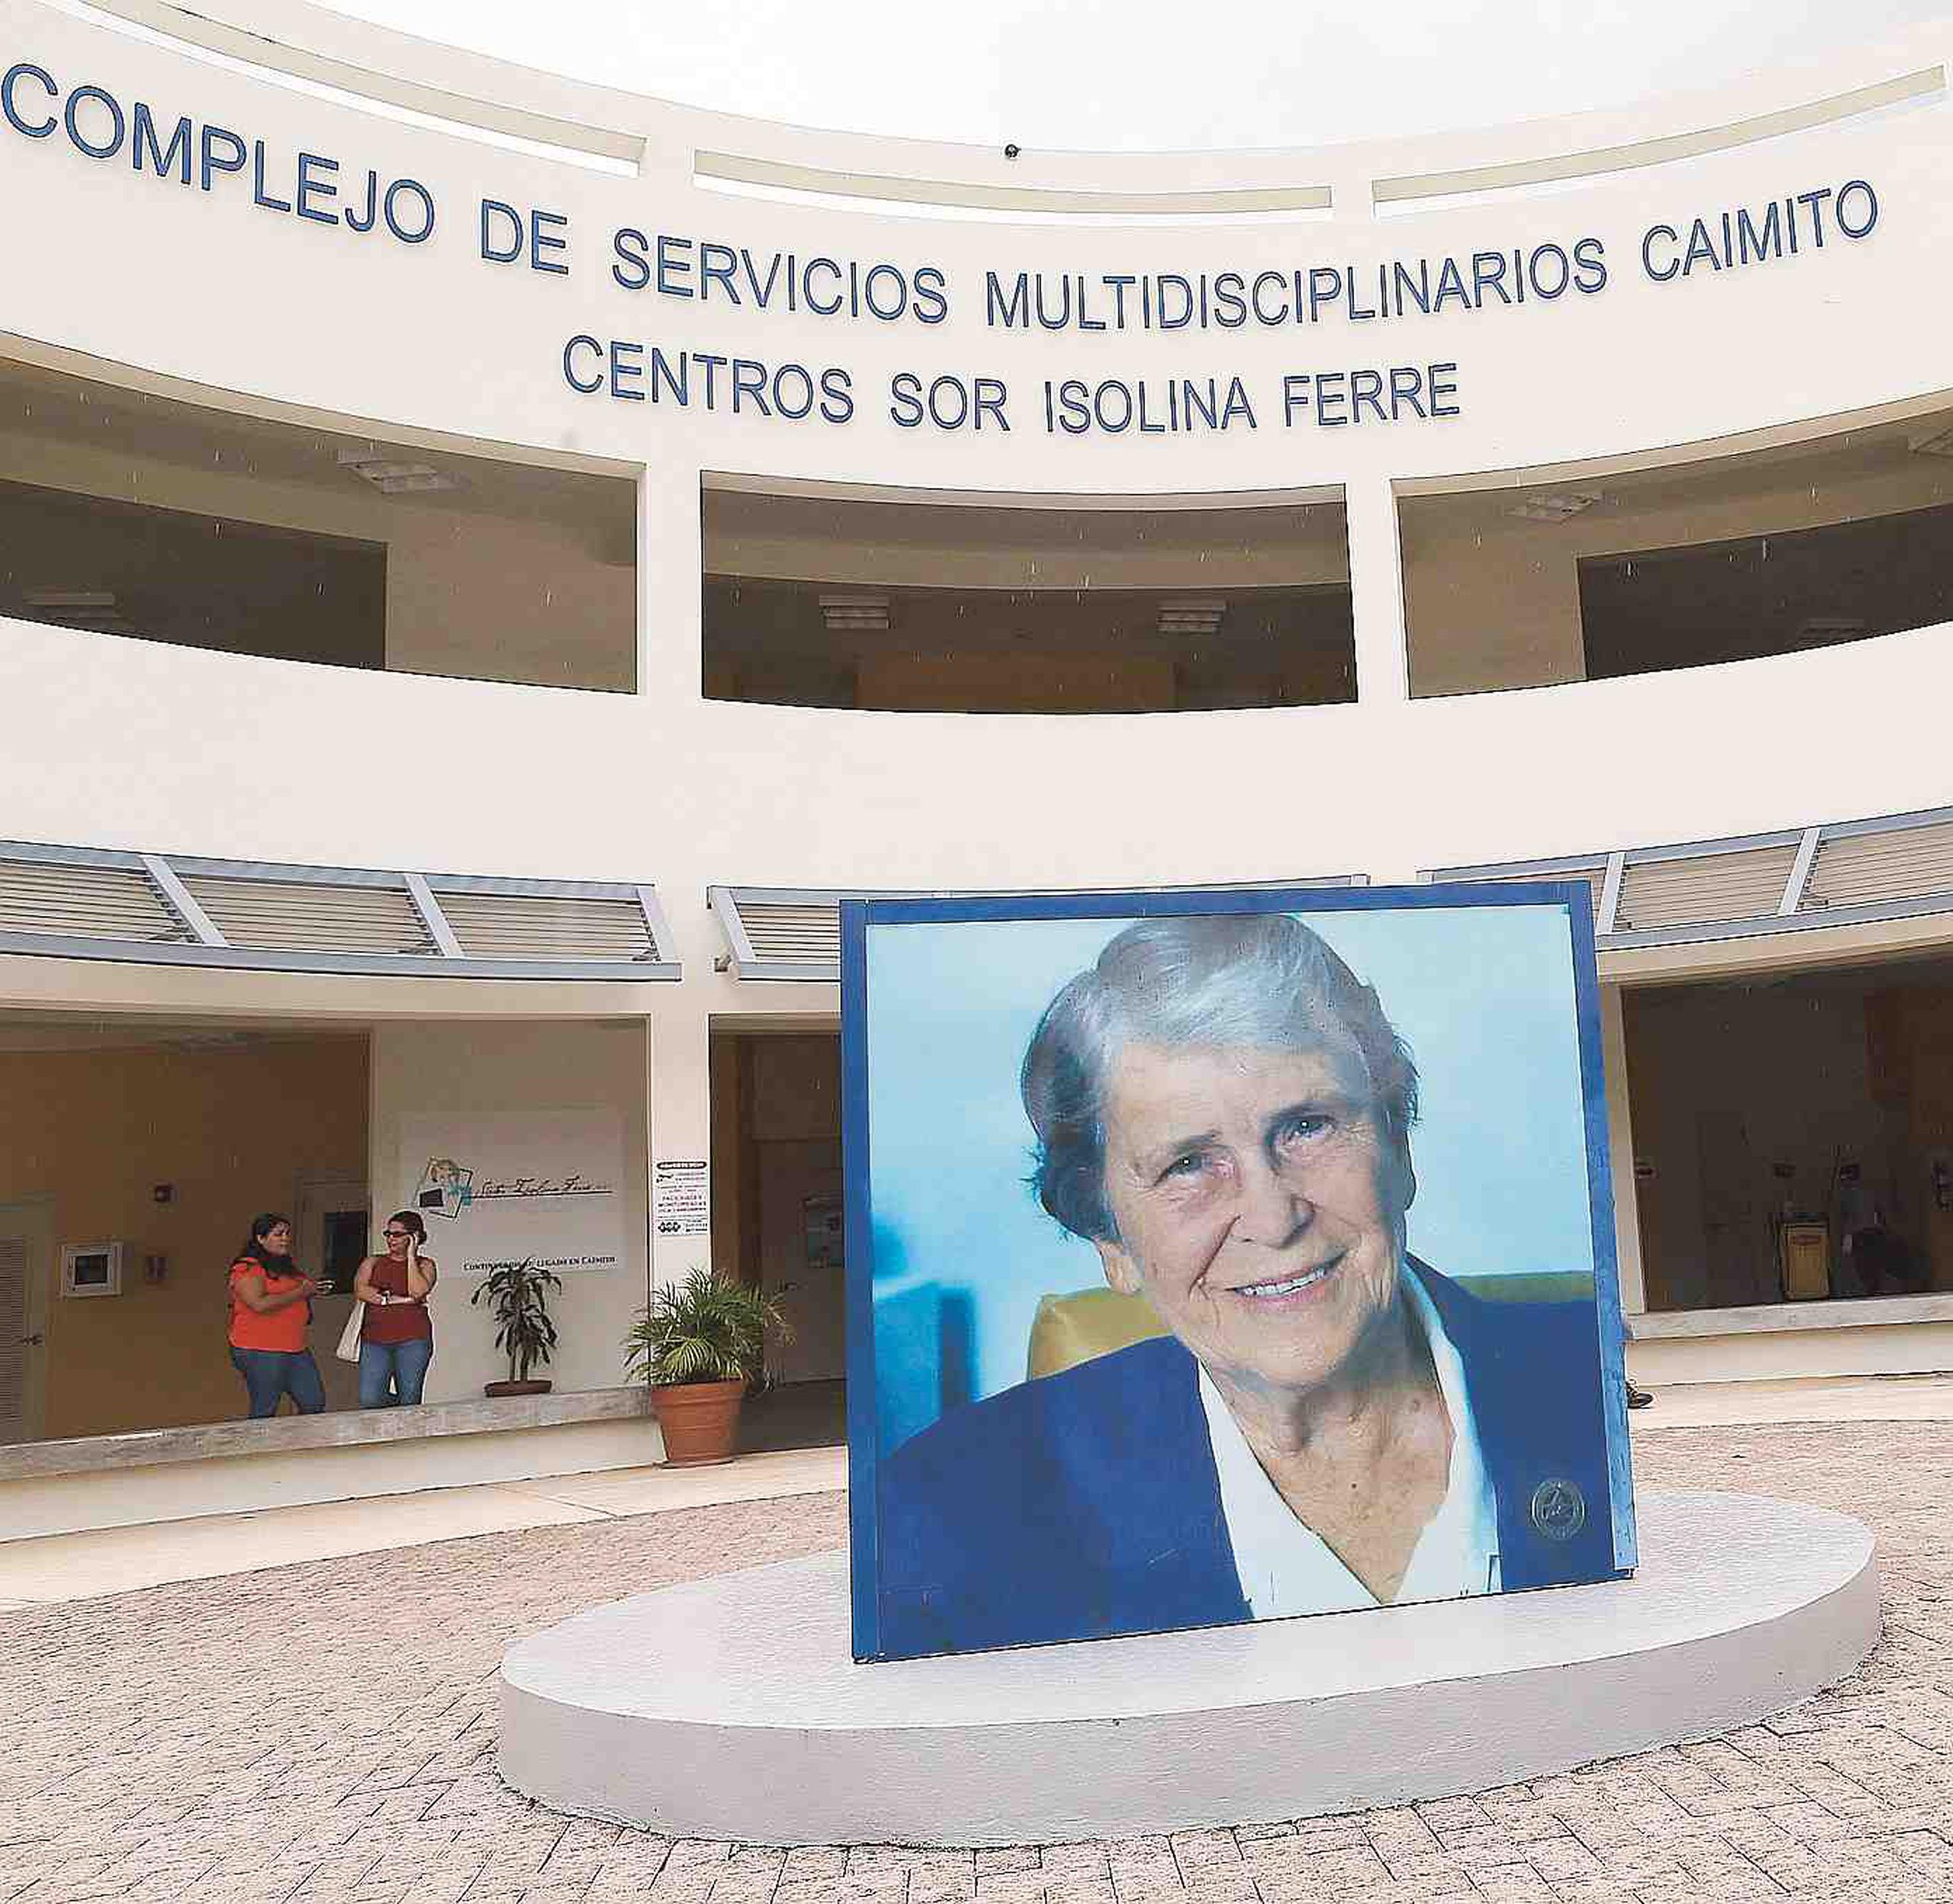 Los Centros Sor Isolina Ferré han logrado impactar 6,506 personas desde sus sedes de Caimito, en San Juan; y La Playa, en Ponce. (Archivo/GFR Media)